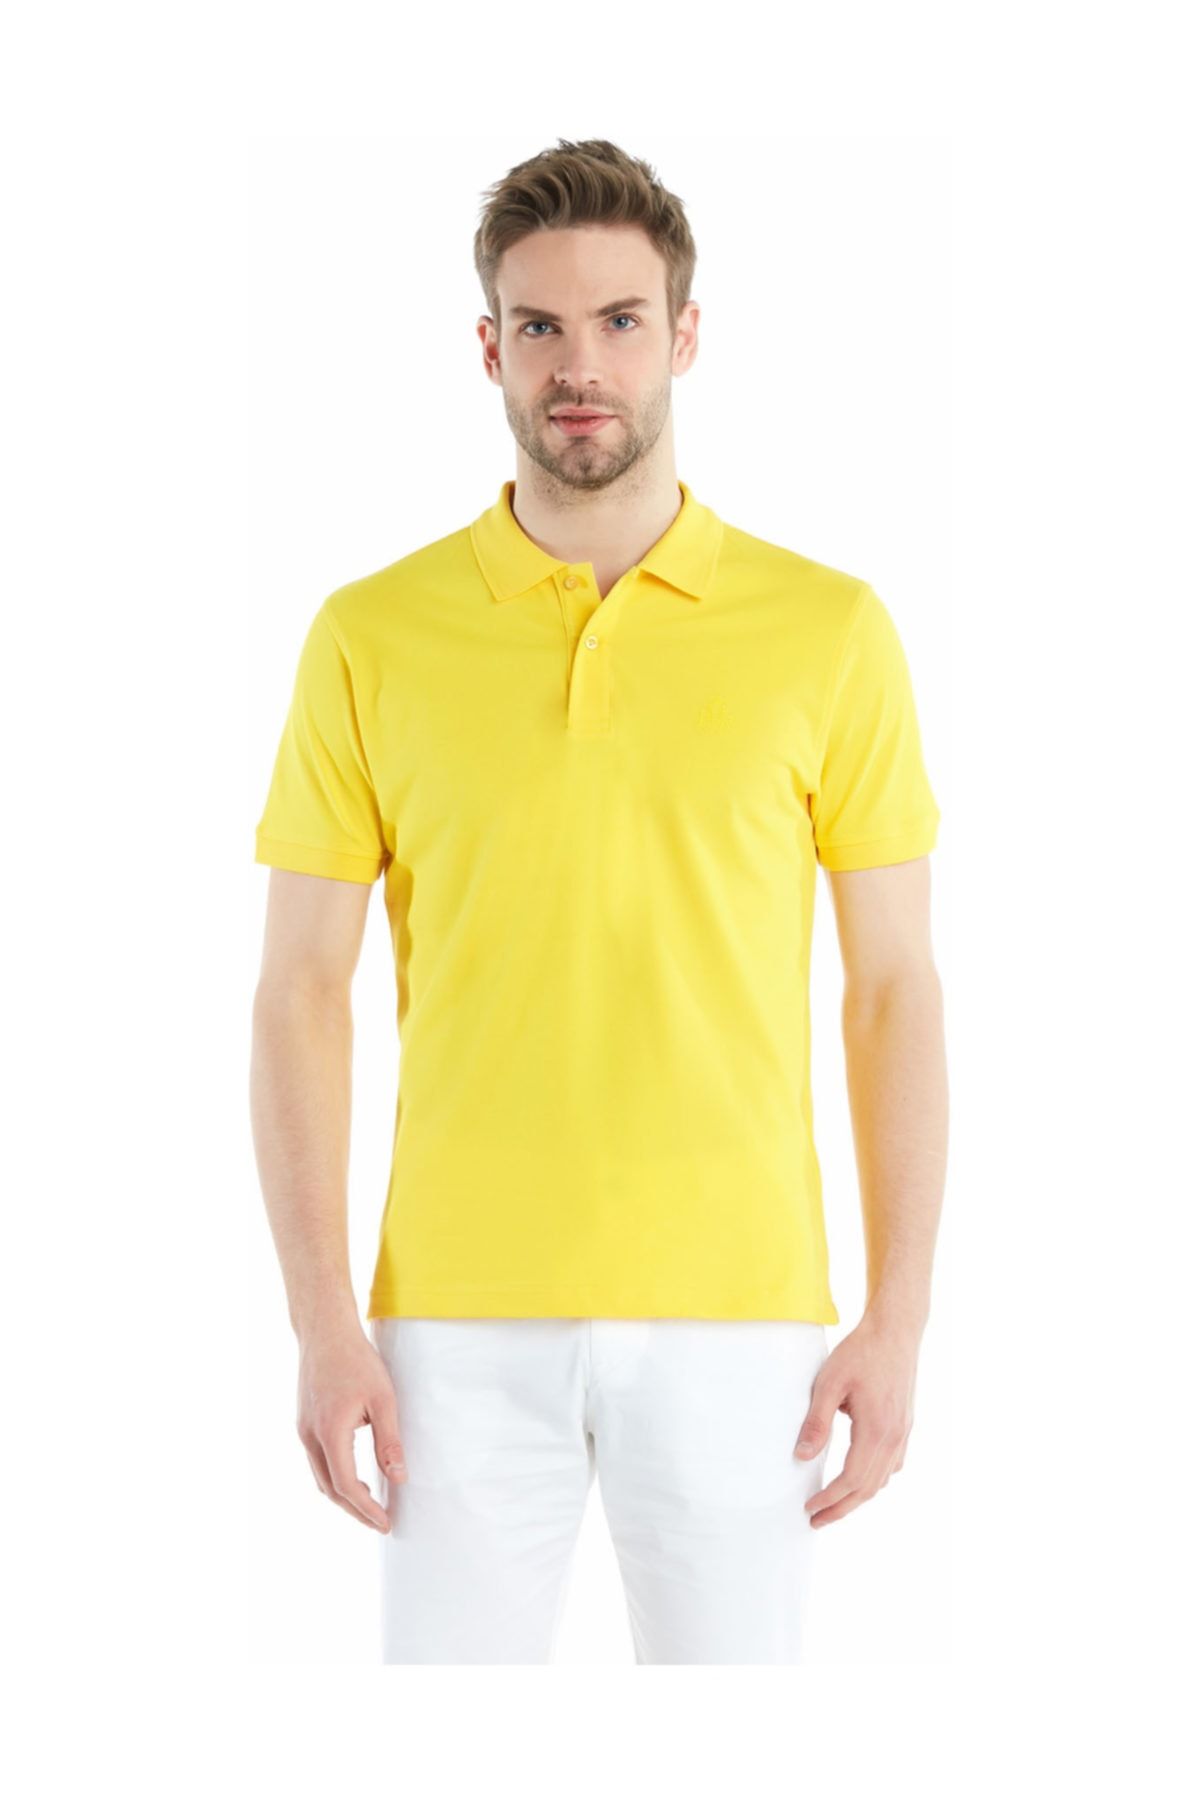 Ruck & Maul Erkek Sarı Vibrant Polo Tshirt